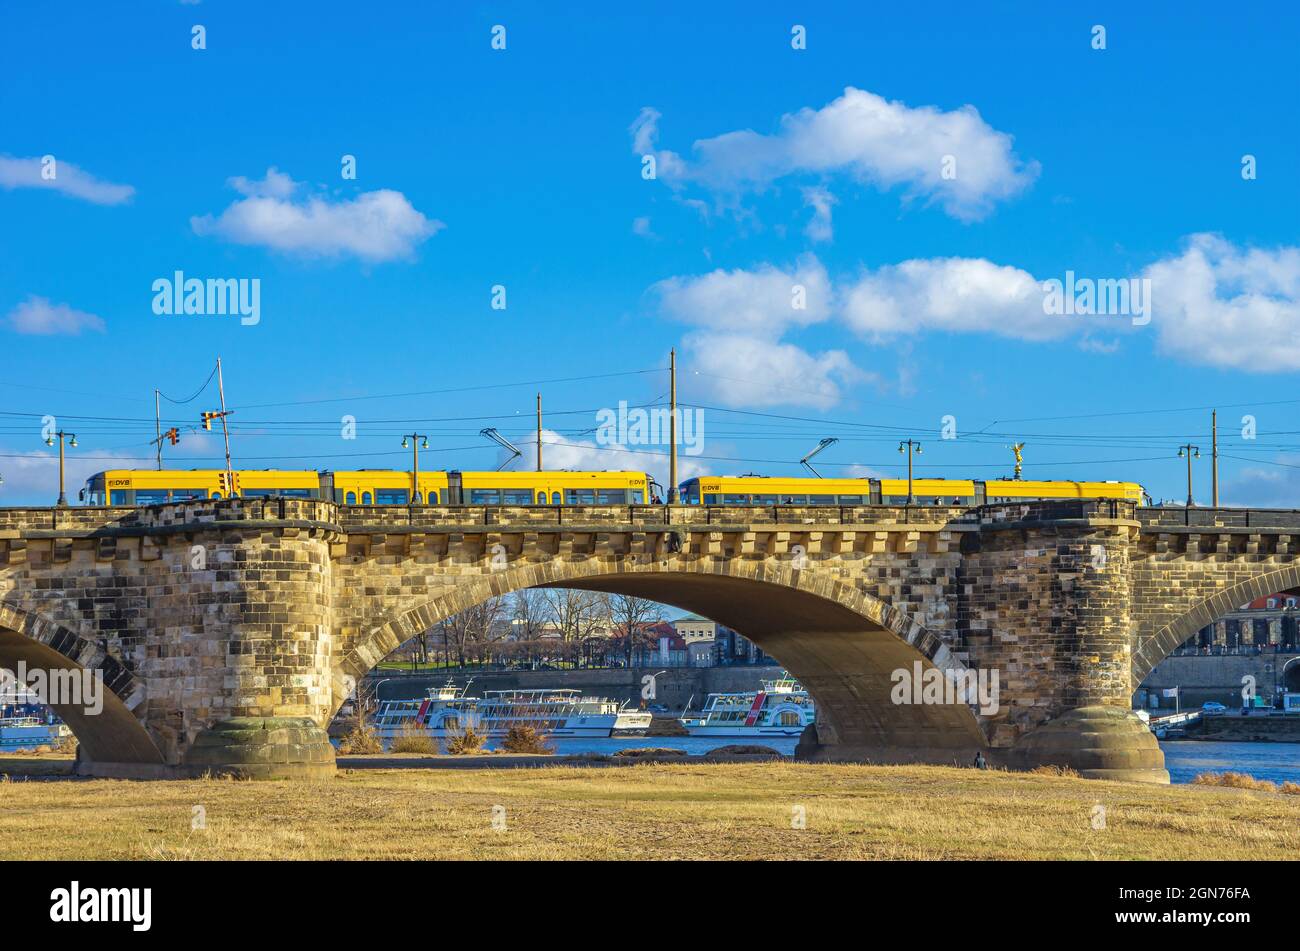 Dresde, Saxe, Allemagne: L'un des célèbres tramways jaunes de la compagnie de transport public de Dresde vient de traverser le pont Augustus. Banque D'Images